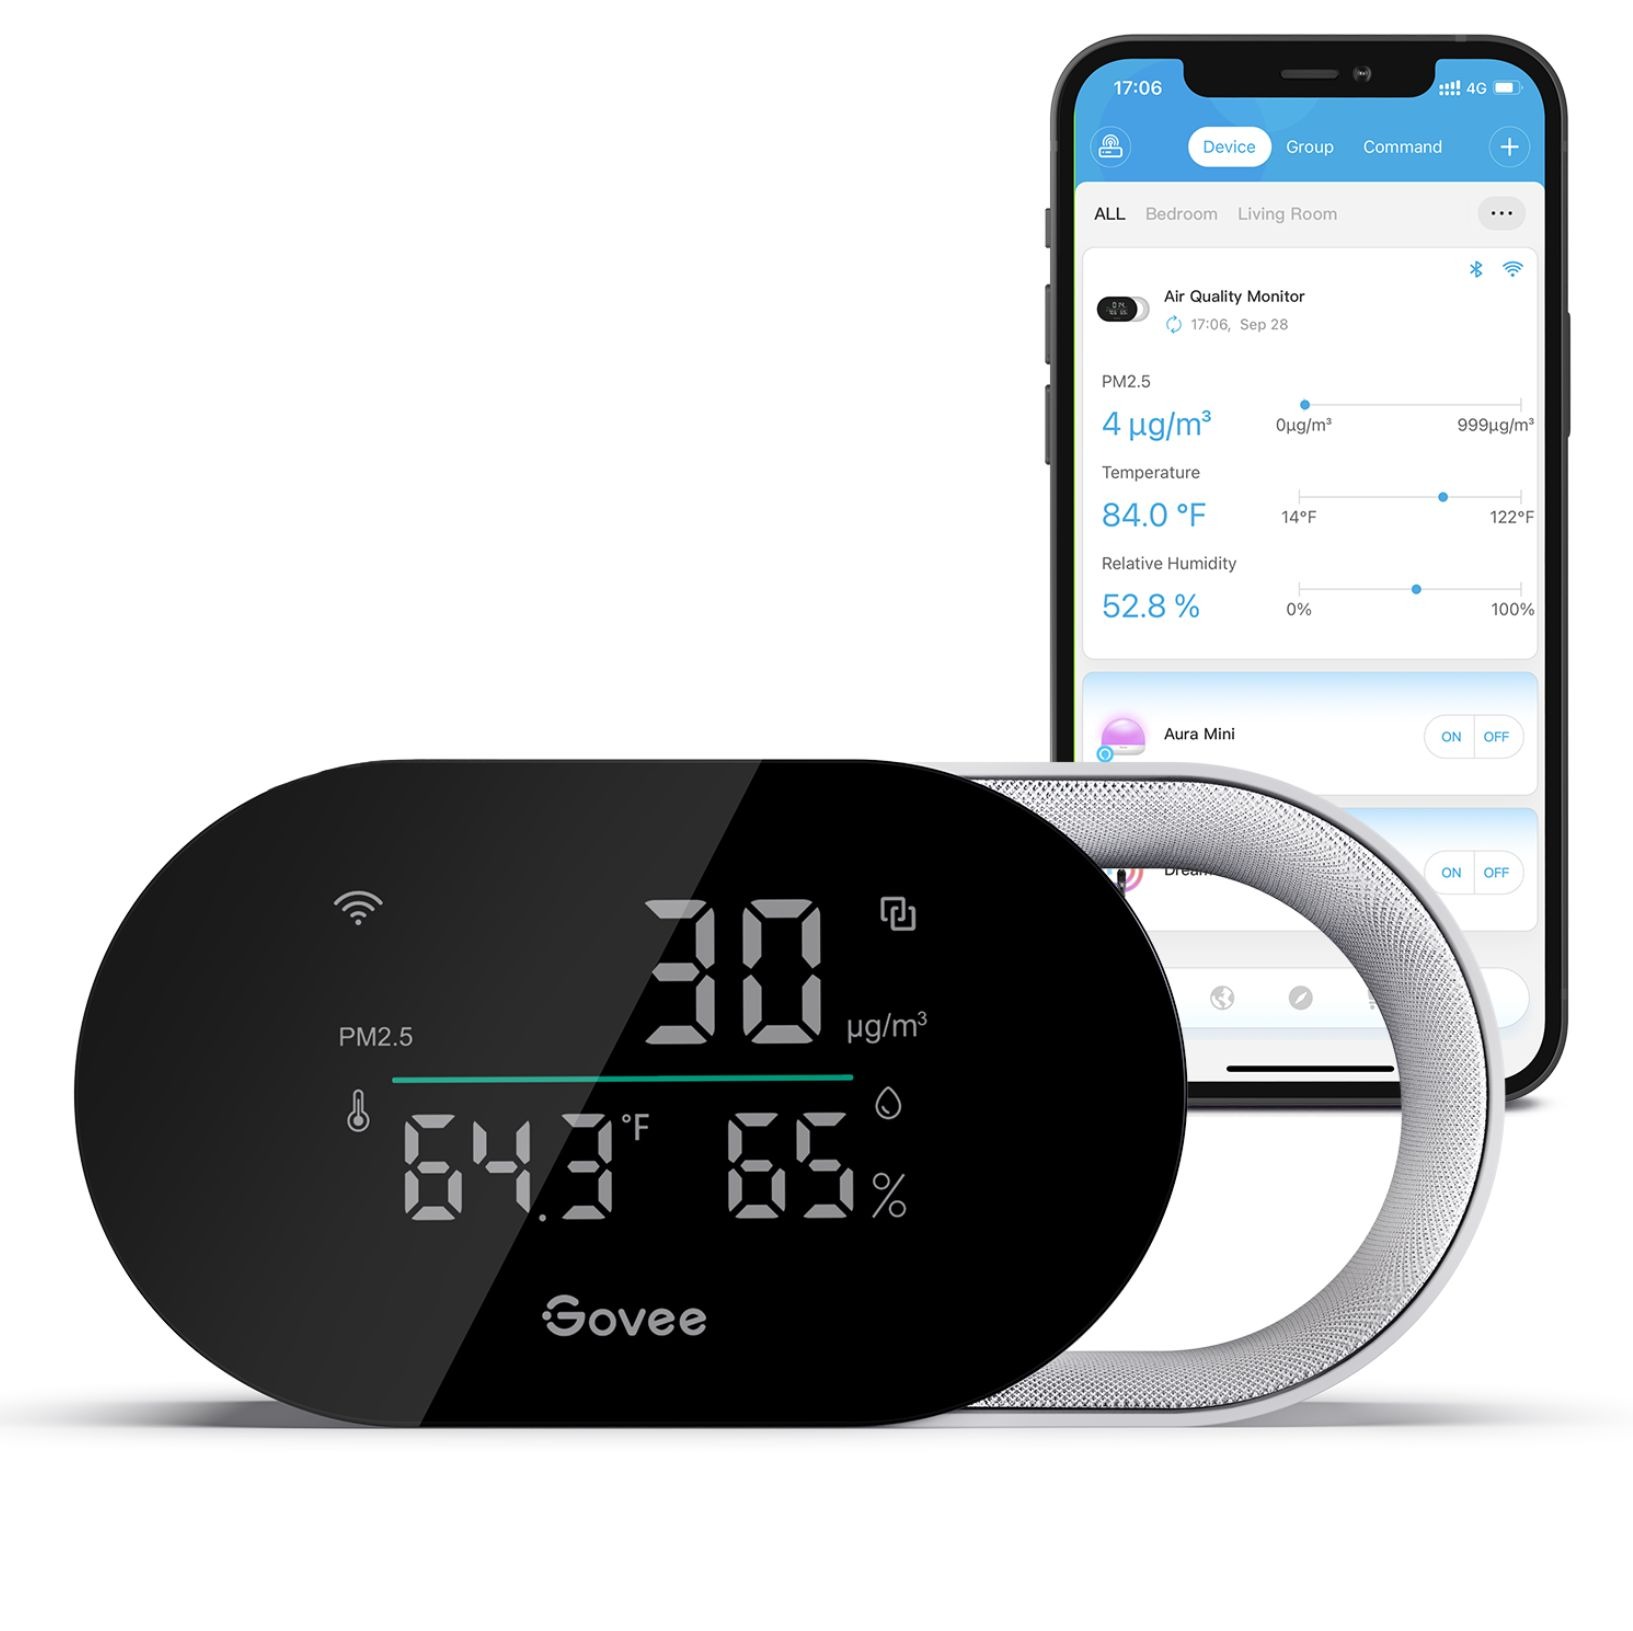 Der Govee Smart Air Quality Monitor vor einem Smartphone, auf dem die Govee App angezeigt wird.